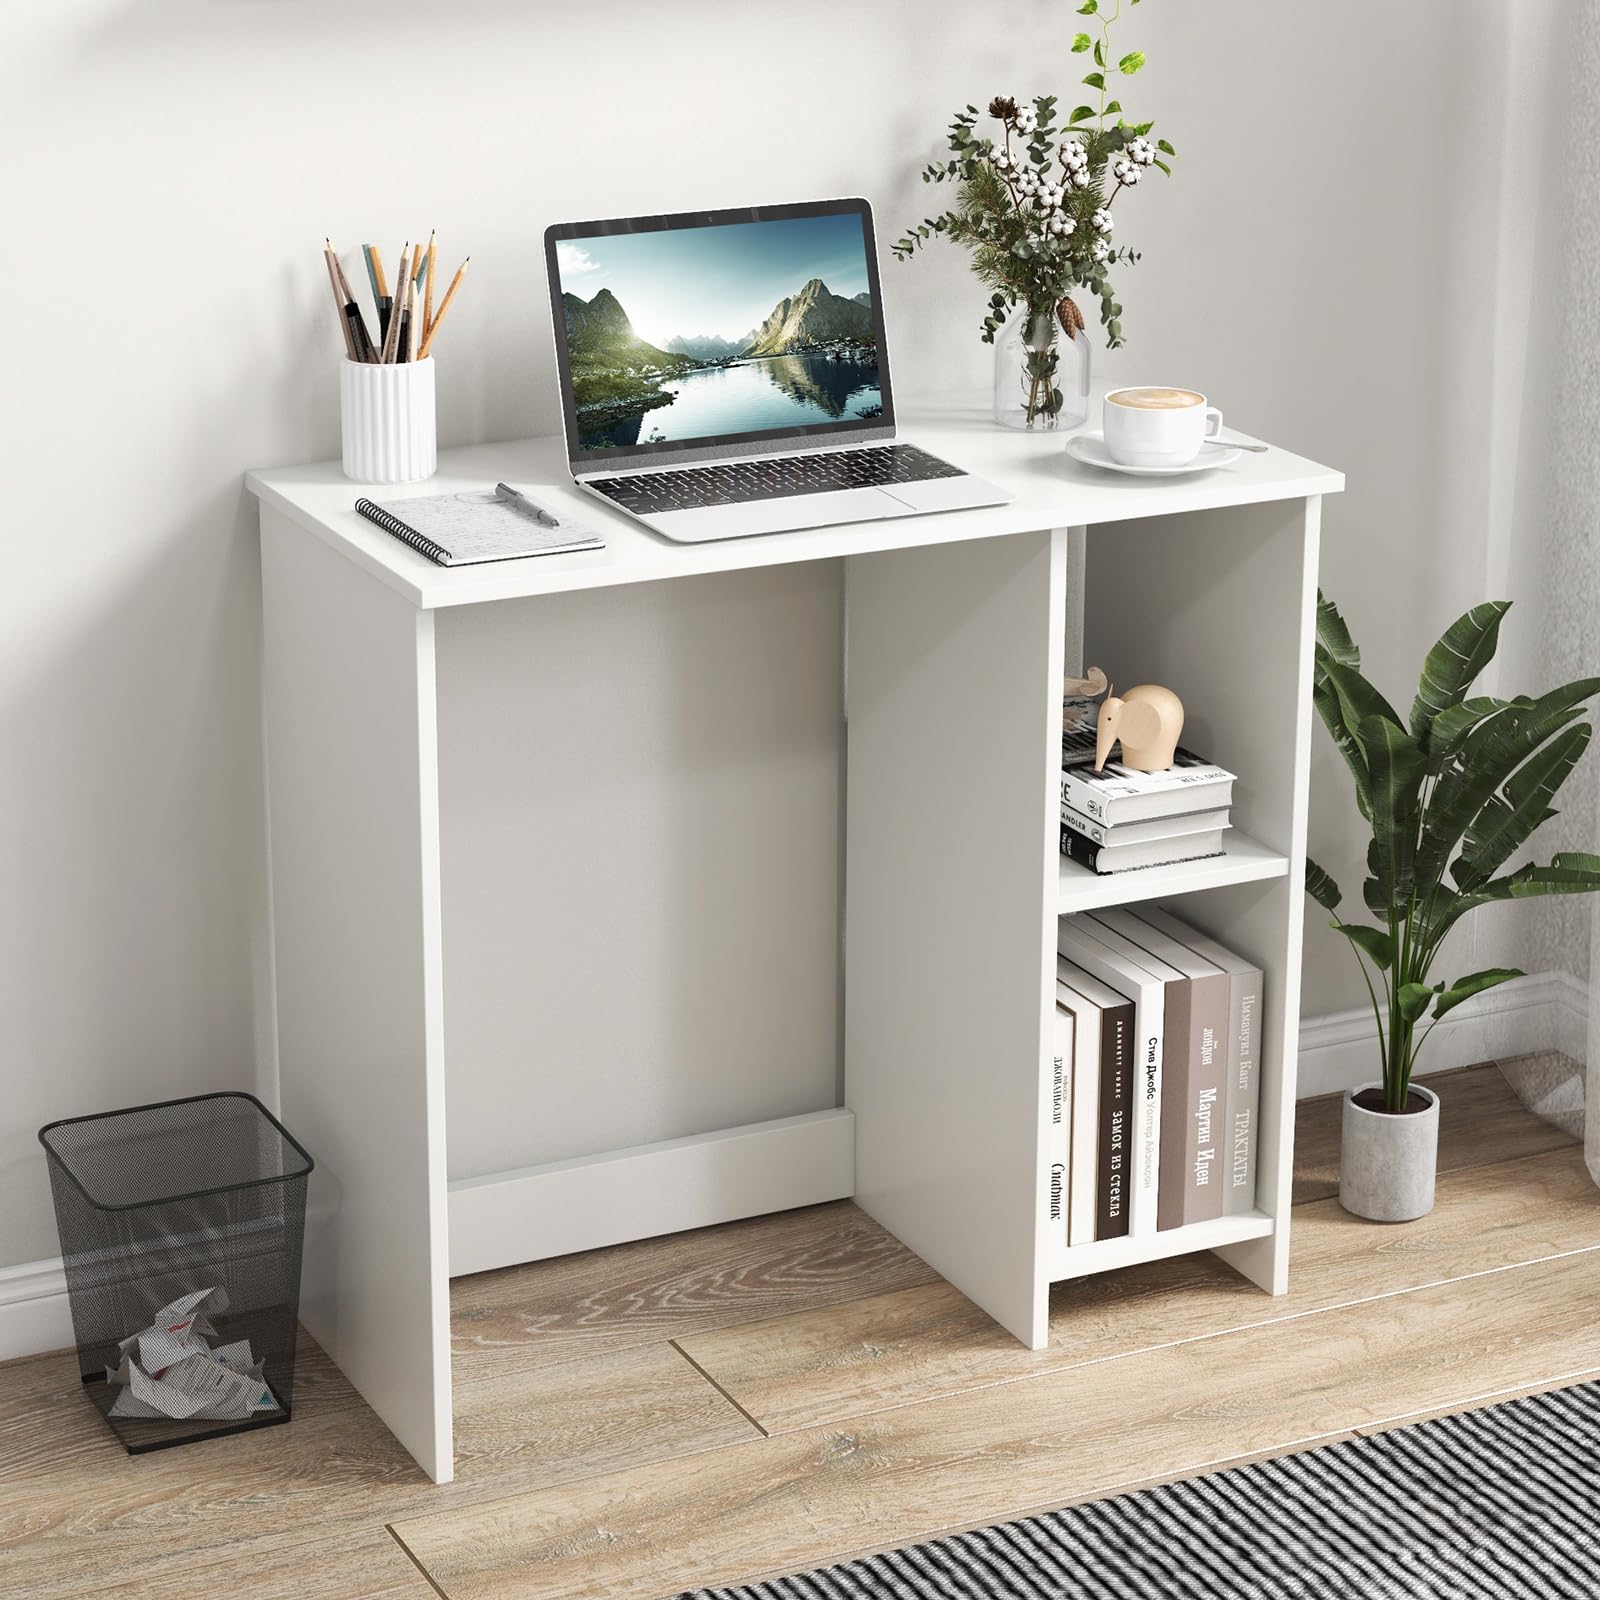 Giantex White Small Desk for Bedroom